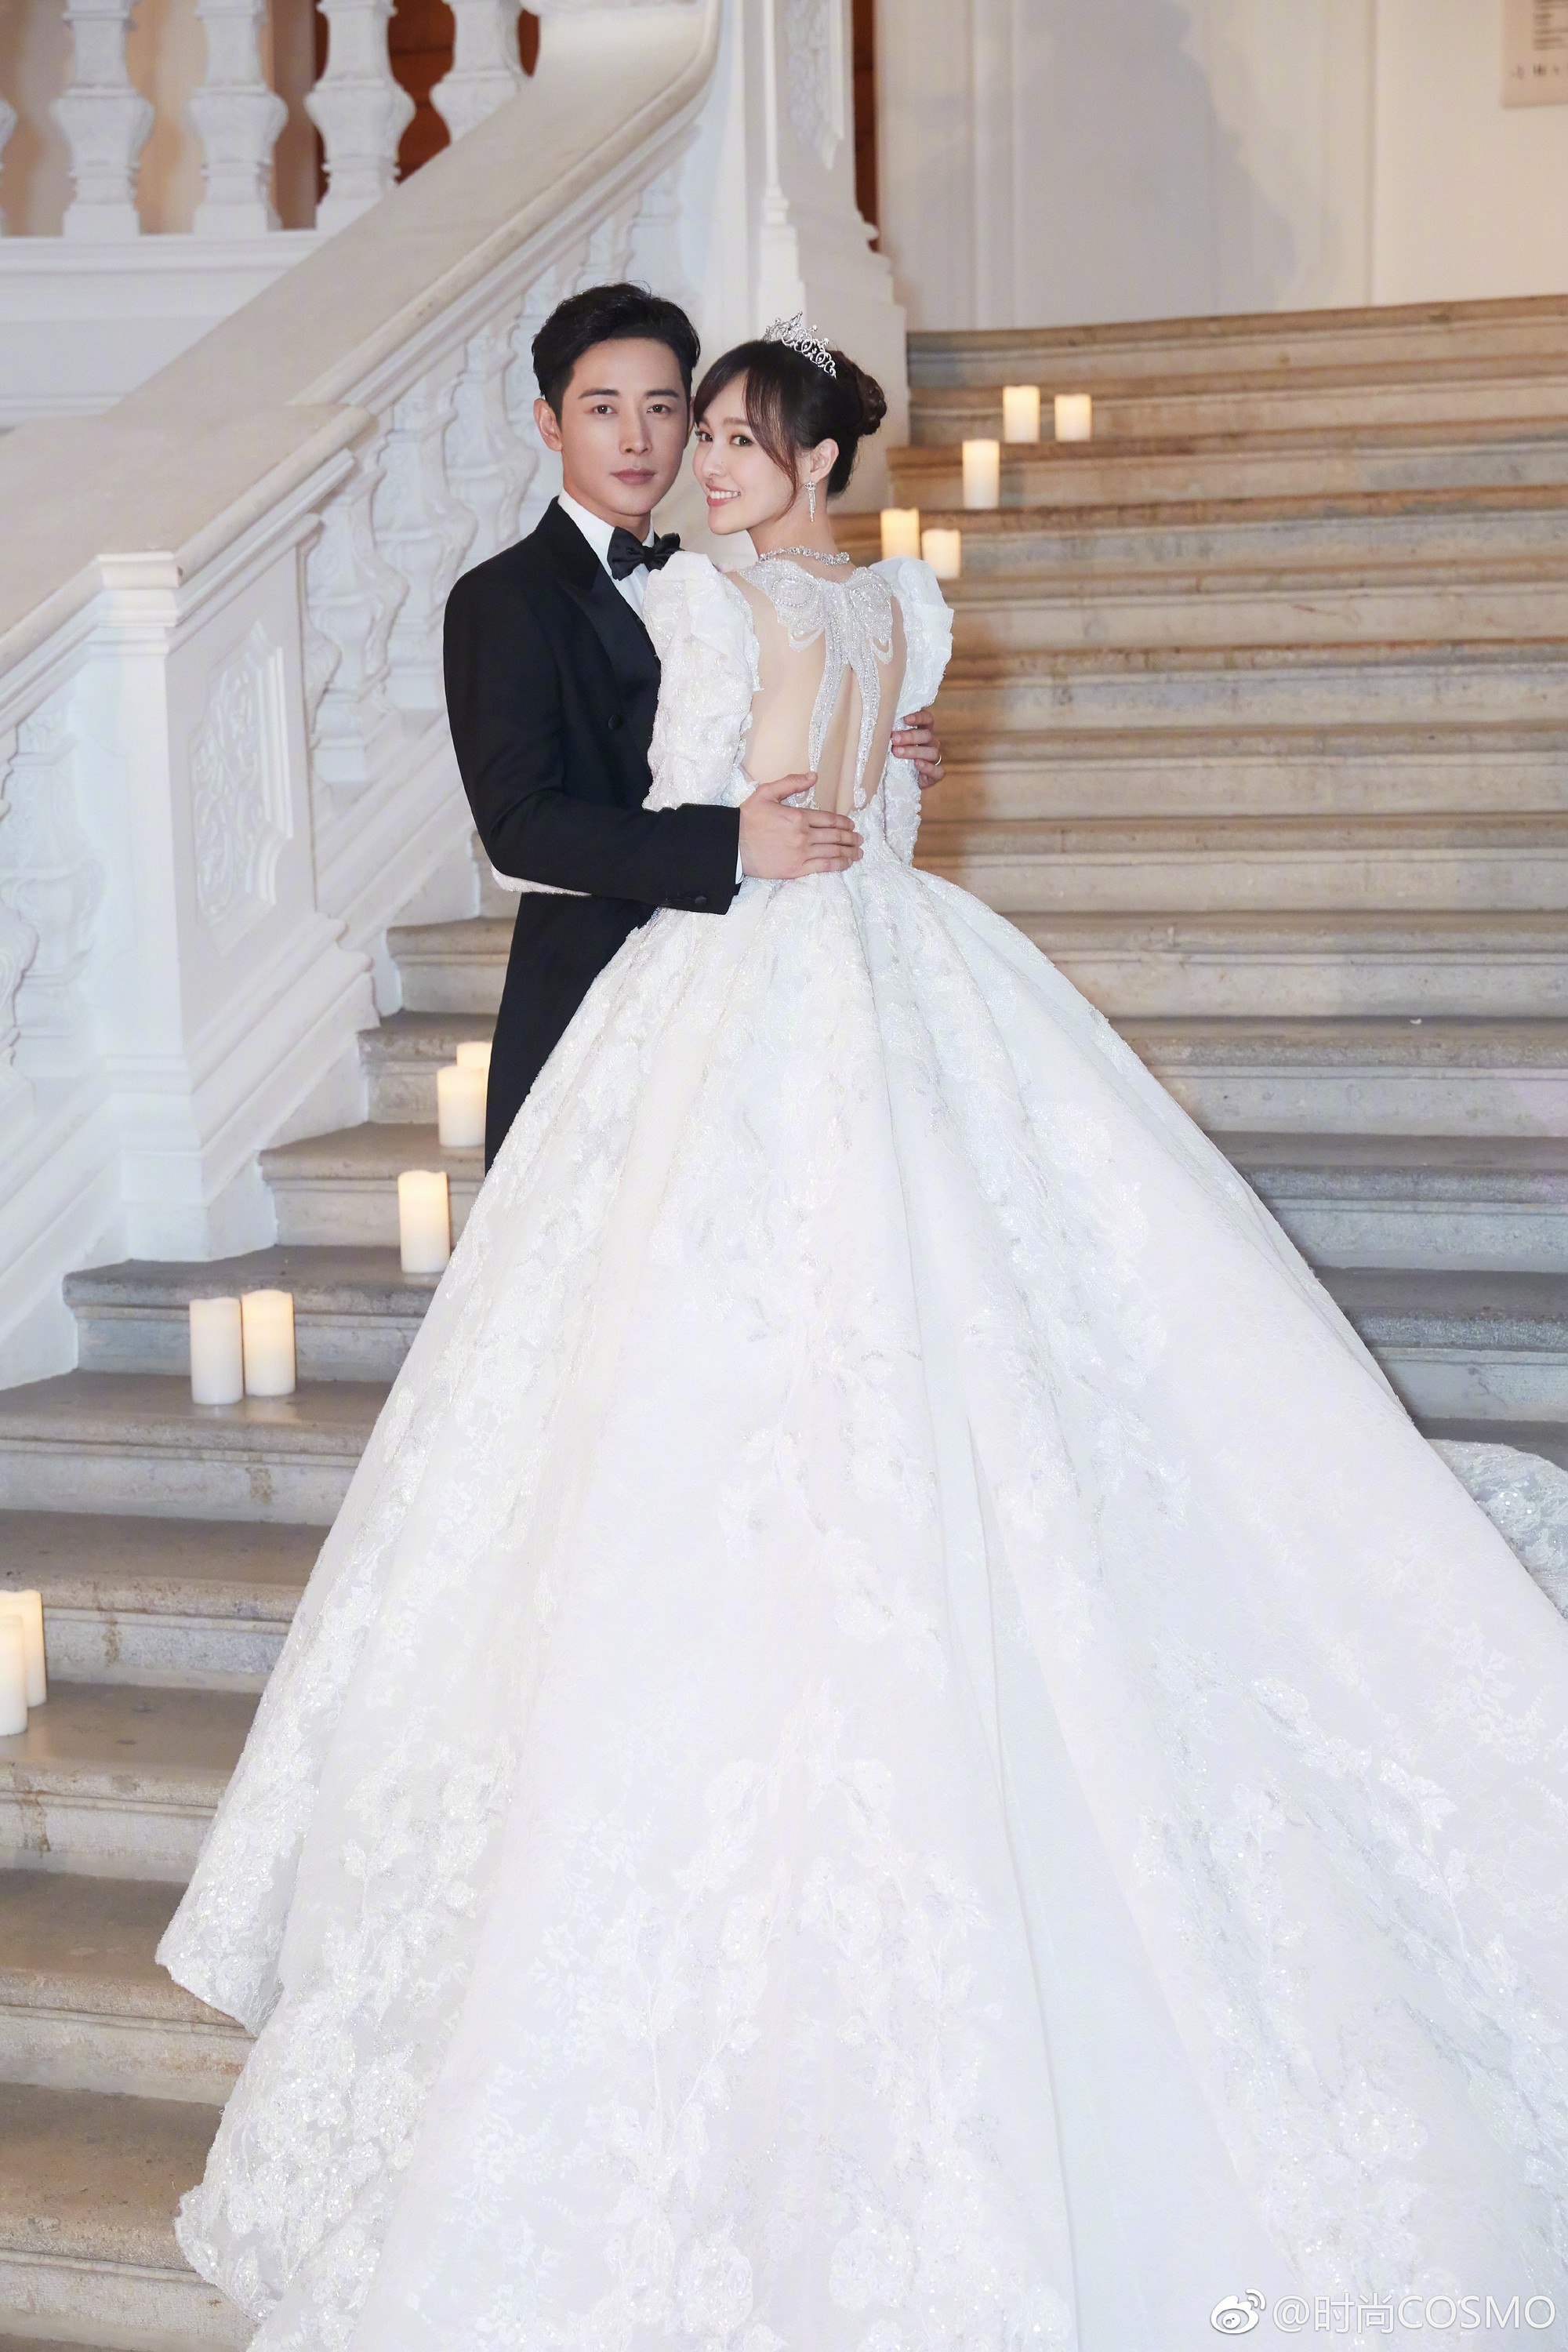 Lily Luta hóa công chúa gợi cảm với váy cưới xanh ngọc - Thời trang sao